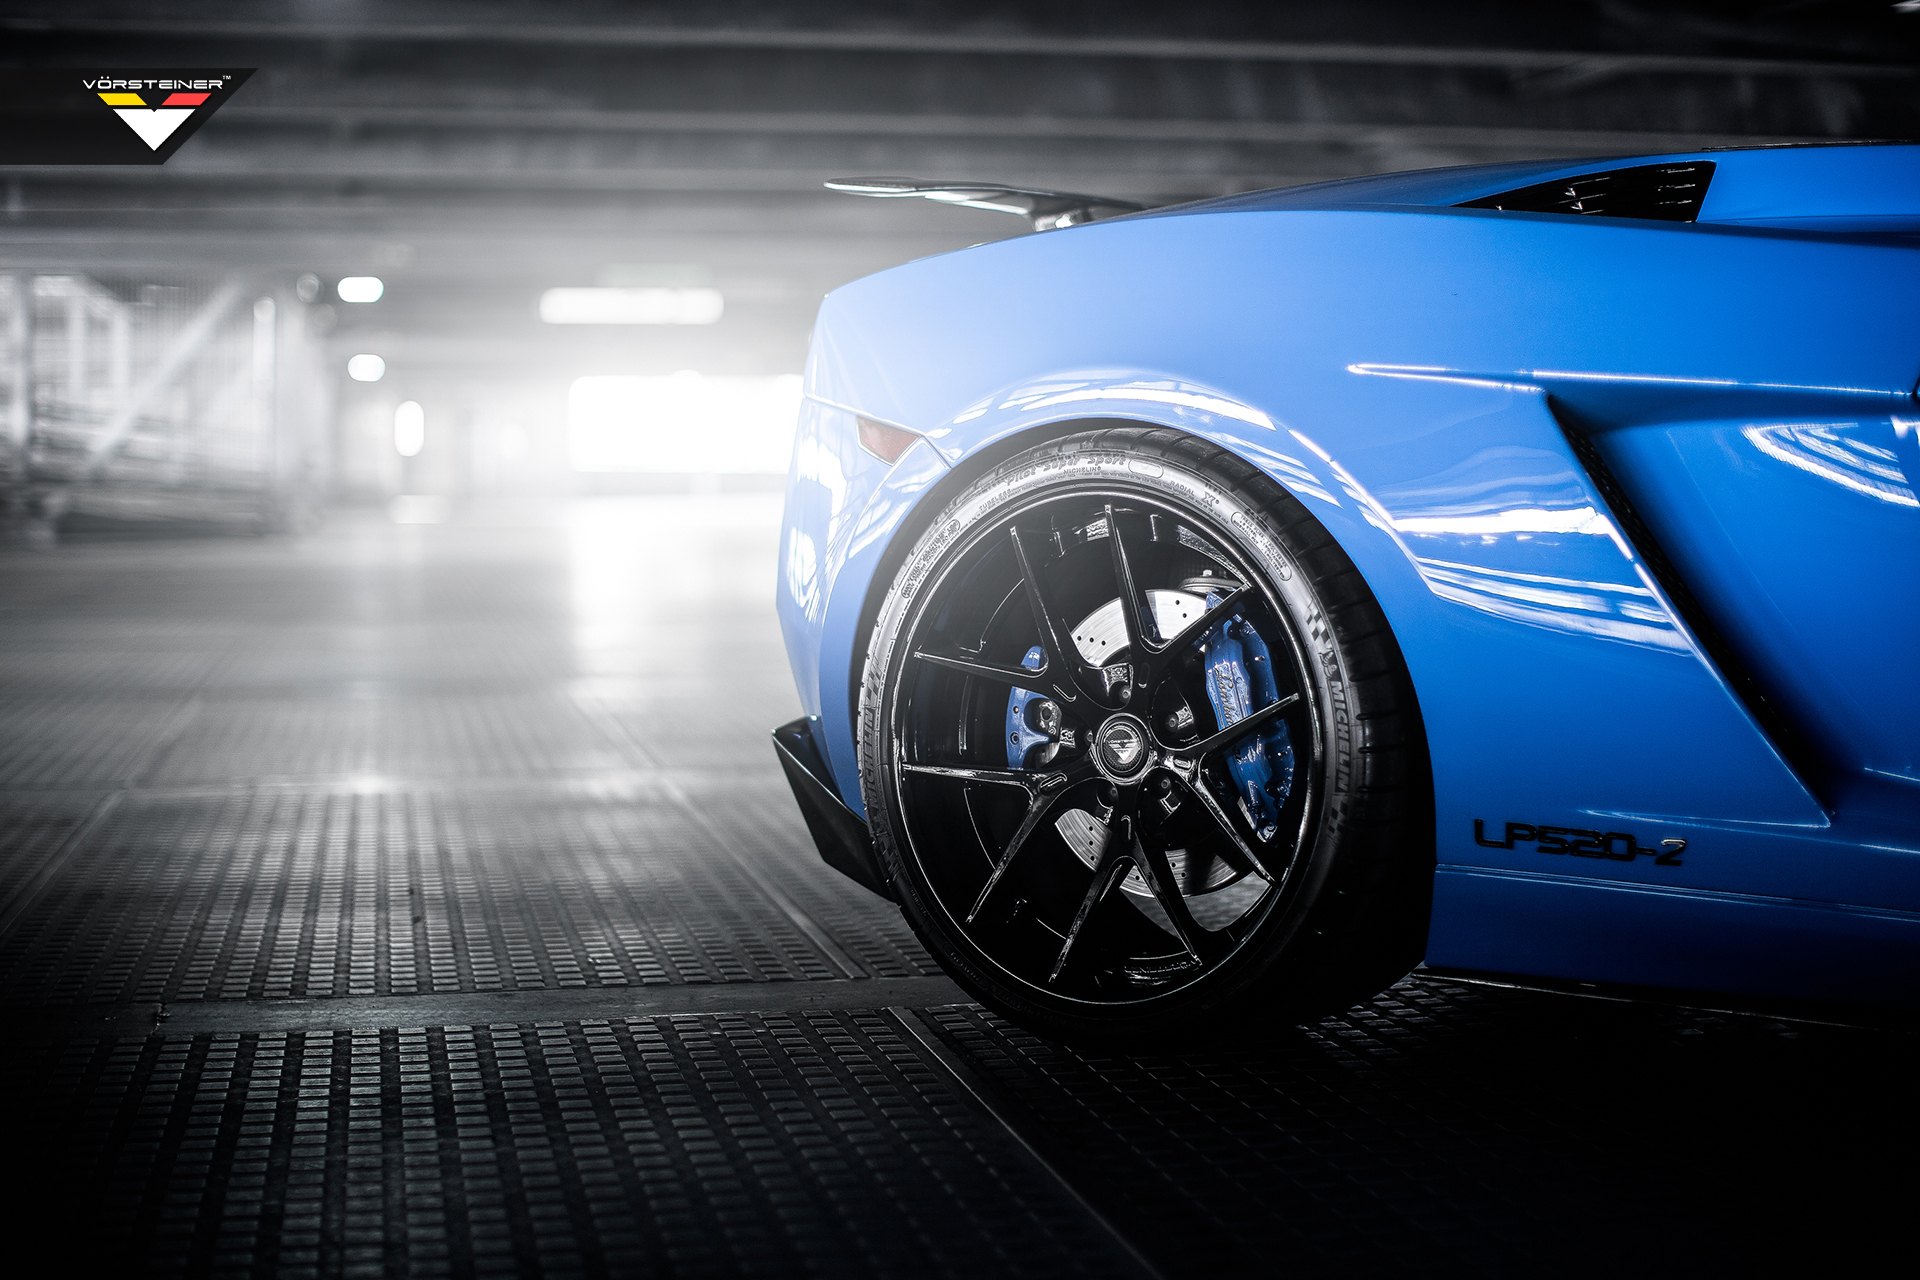 Michelin Tires on Blue Convertible Lamborghini Gallardo - Photo by Vorstiner